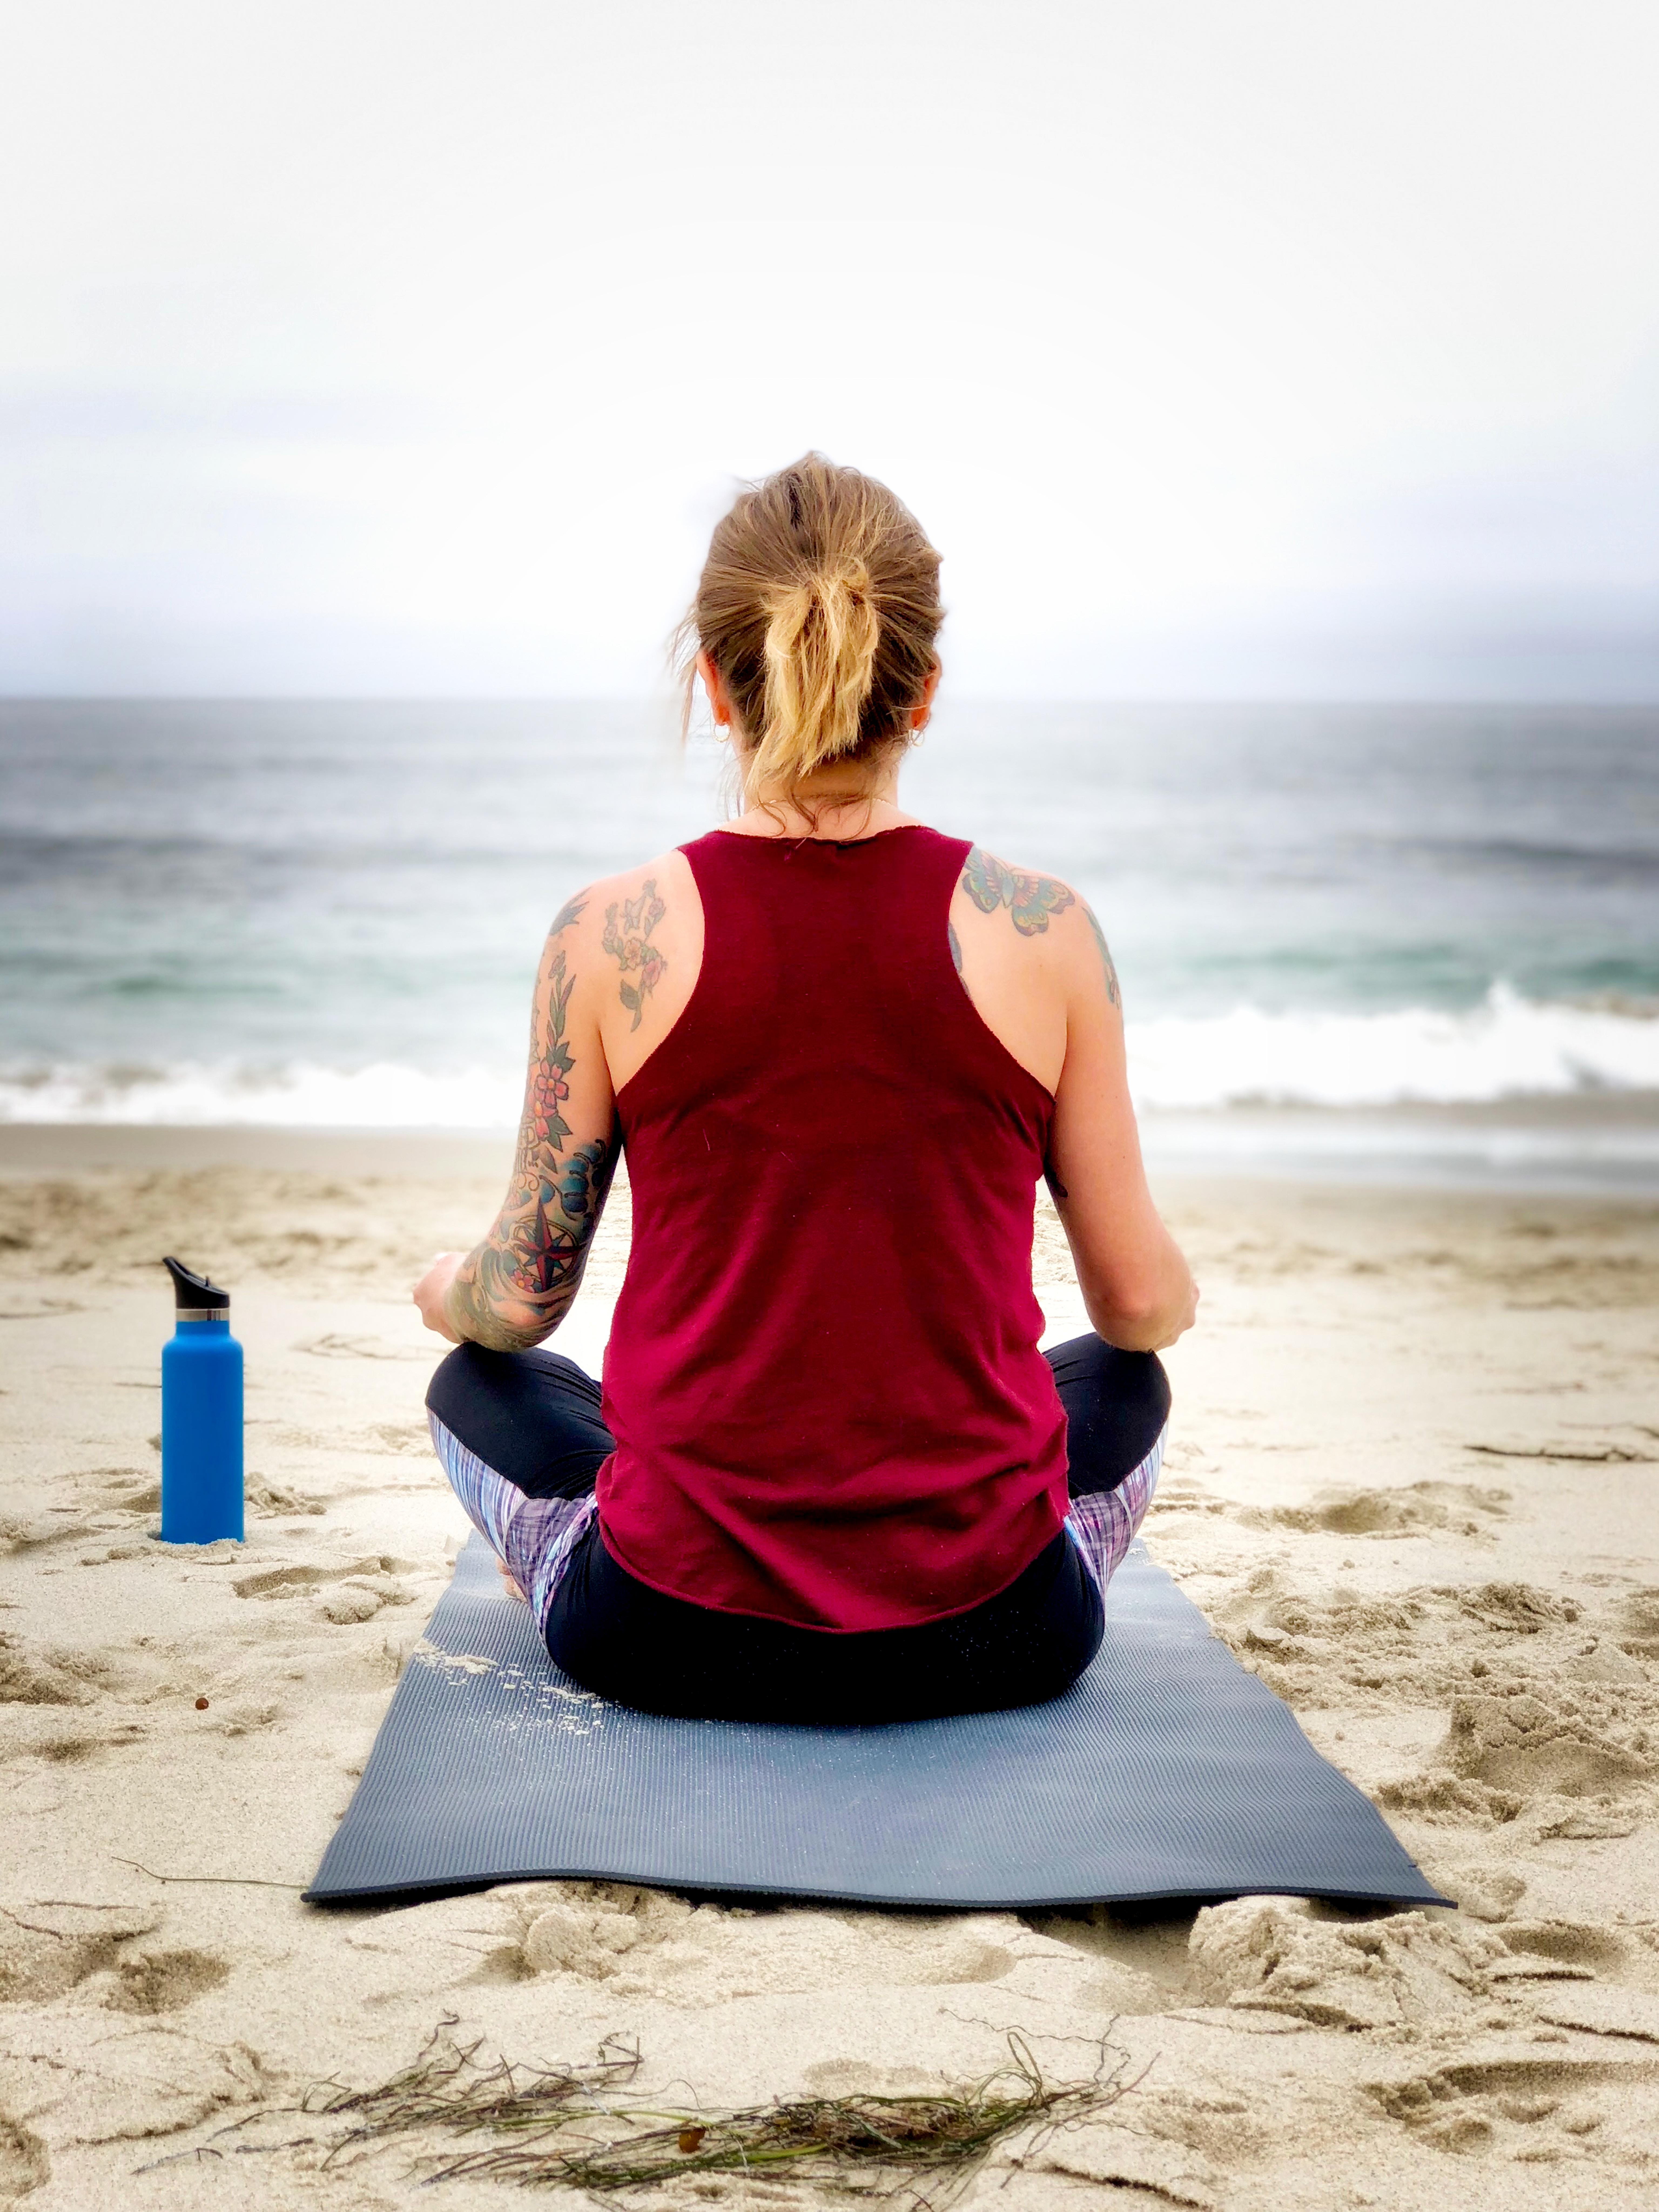 femme faisant du yoga sur la plage de dos sur son matela, bouteille d'eau, océan